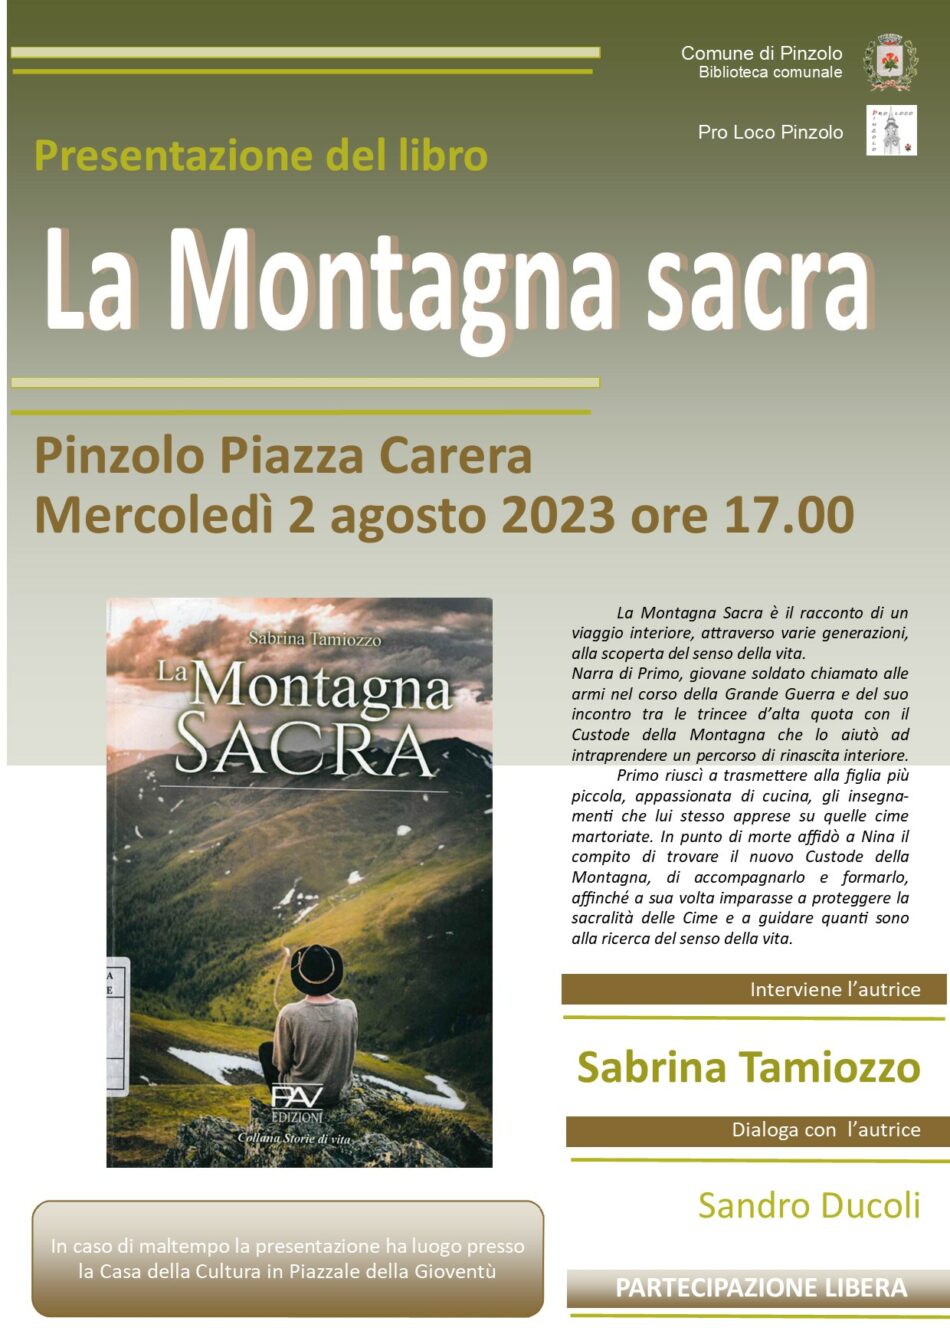 Pinzolo Mercoledì 2 agosto ore 17 – Incontro con l’autrice Sabrina Tamiozzo che presenterà “La Montagna sacra”